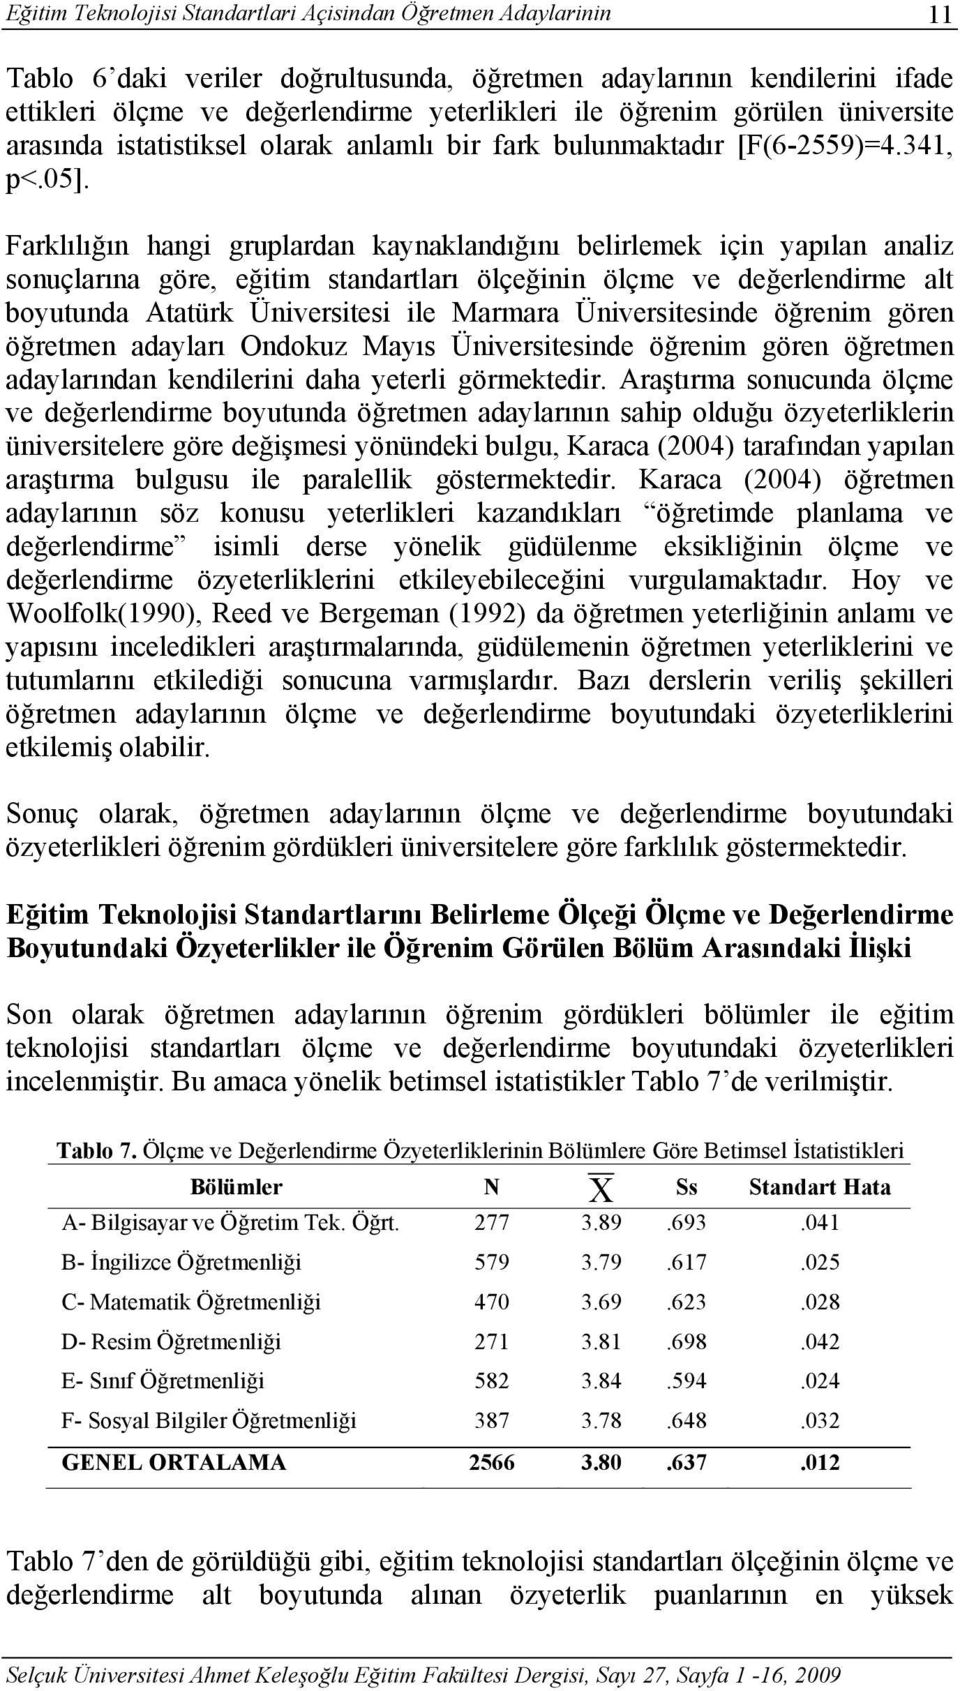 Farklılığın hangi gruplardan kaynaklandığını belirlemek için yapılan analiz sonuçlarına göre, eğitim standartları ölçeğinin ölçme ve değerlendirme alt boyutunda Atatürk Üniversitesi ile Marmara